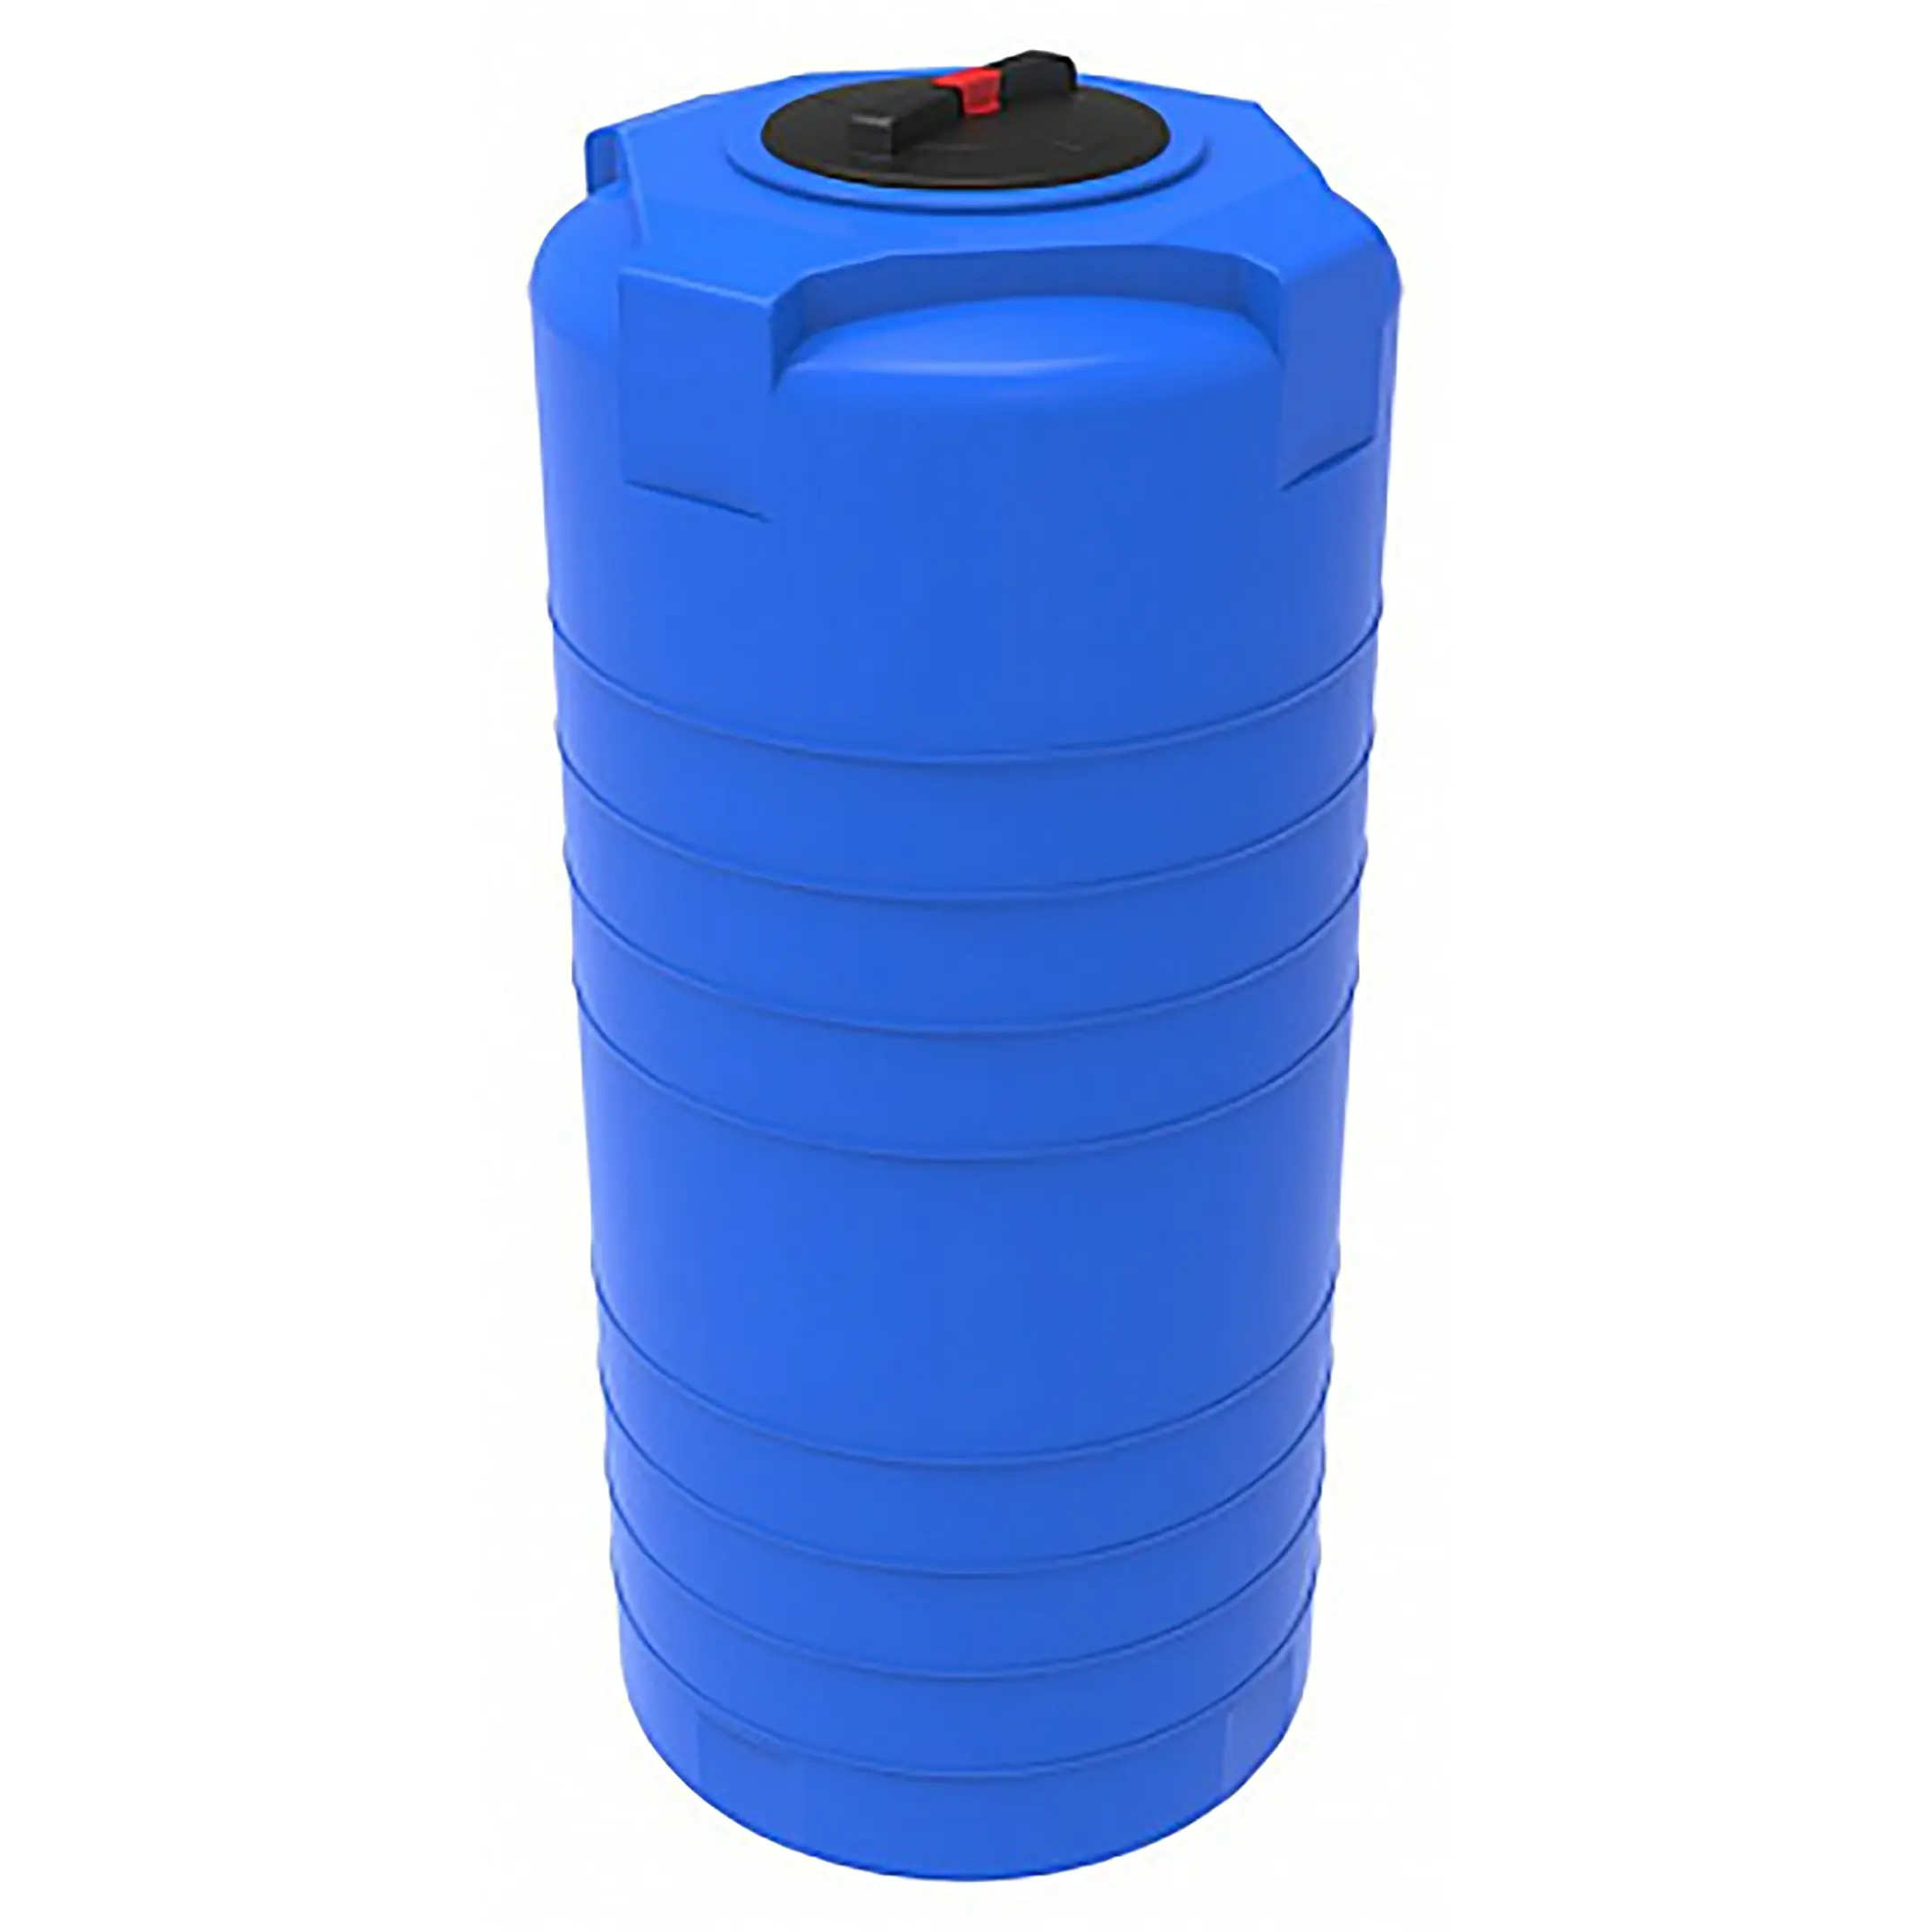 Бак для воды 500л. Емкость ЭКОПРОМ L 500 синяя. ЭКОПРОМ Т 500 бак 500л для воды пластиковый с крышкой 107.0500.601.0. Бак для воды ЭКОПРОМ T-200. Емкость ЭКОПРОМ S 750 литров.